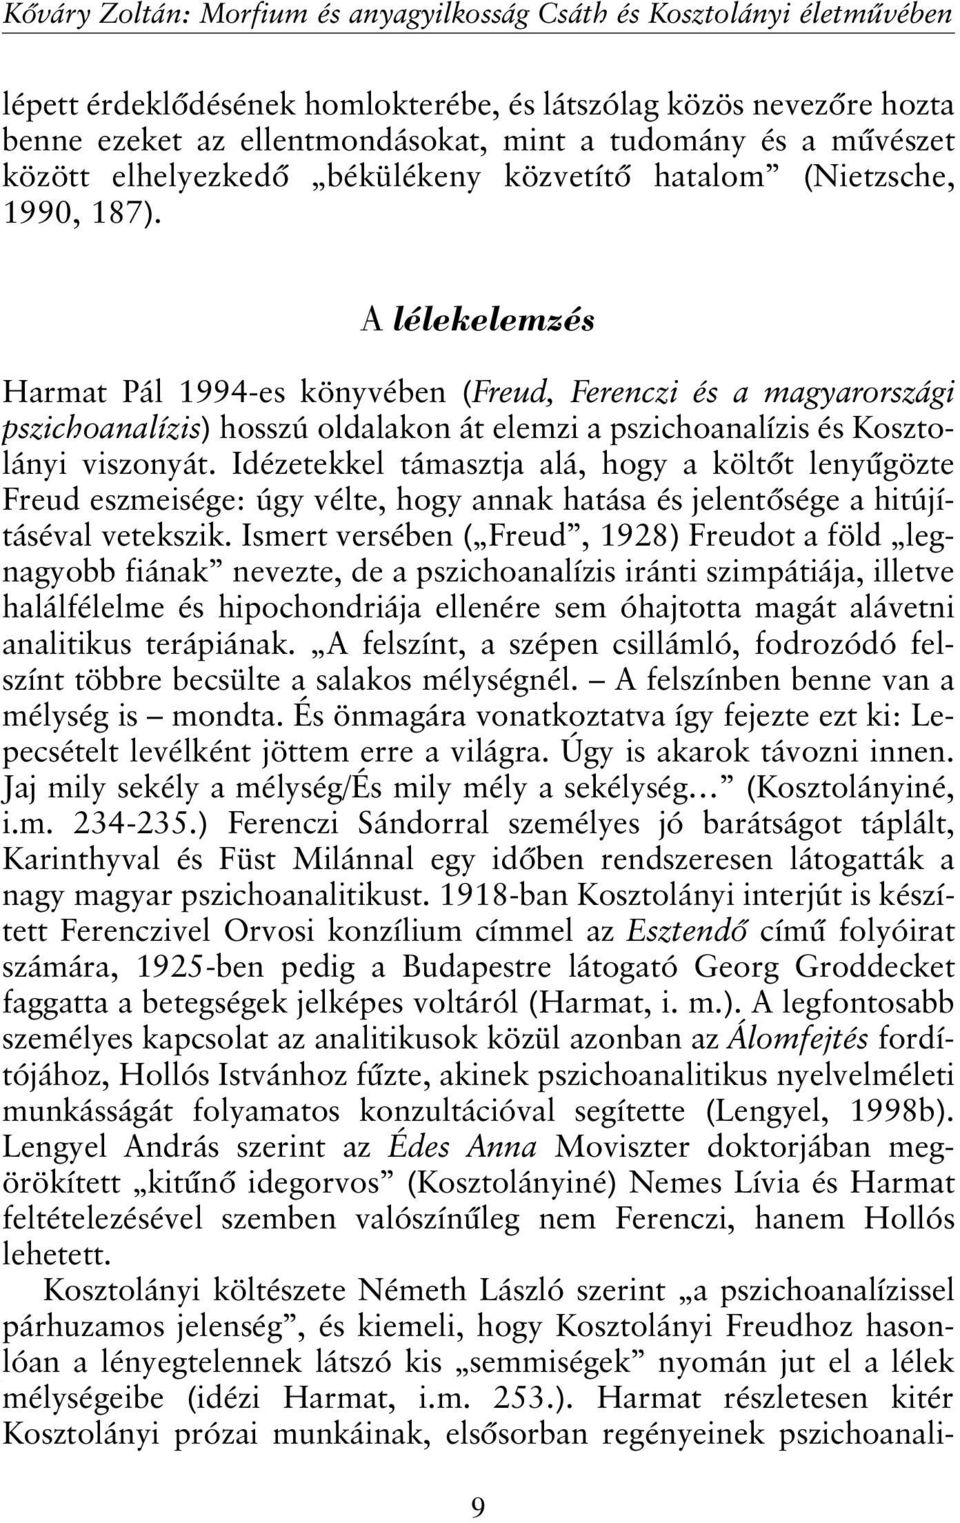 A lélekelemzés Harmat Pál 1994-es könyvében (Freud, Ferenczi és a magyarországi pszichoanalízis) hosszú oldalakon át elemzi a pszichoanalízis és Kosztolányi viszonyát.